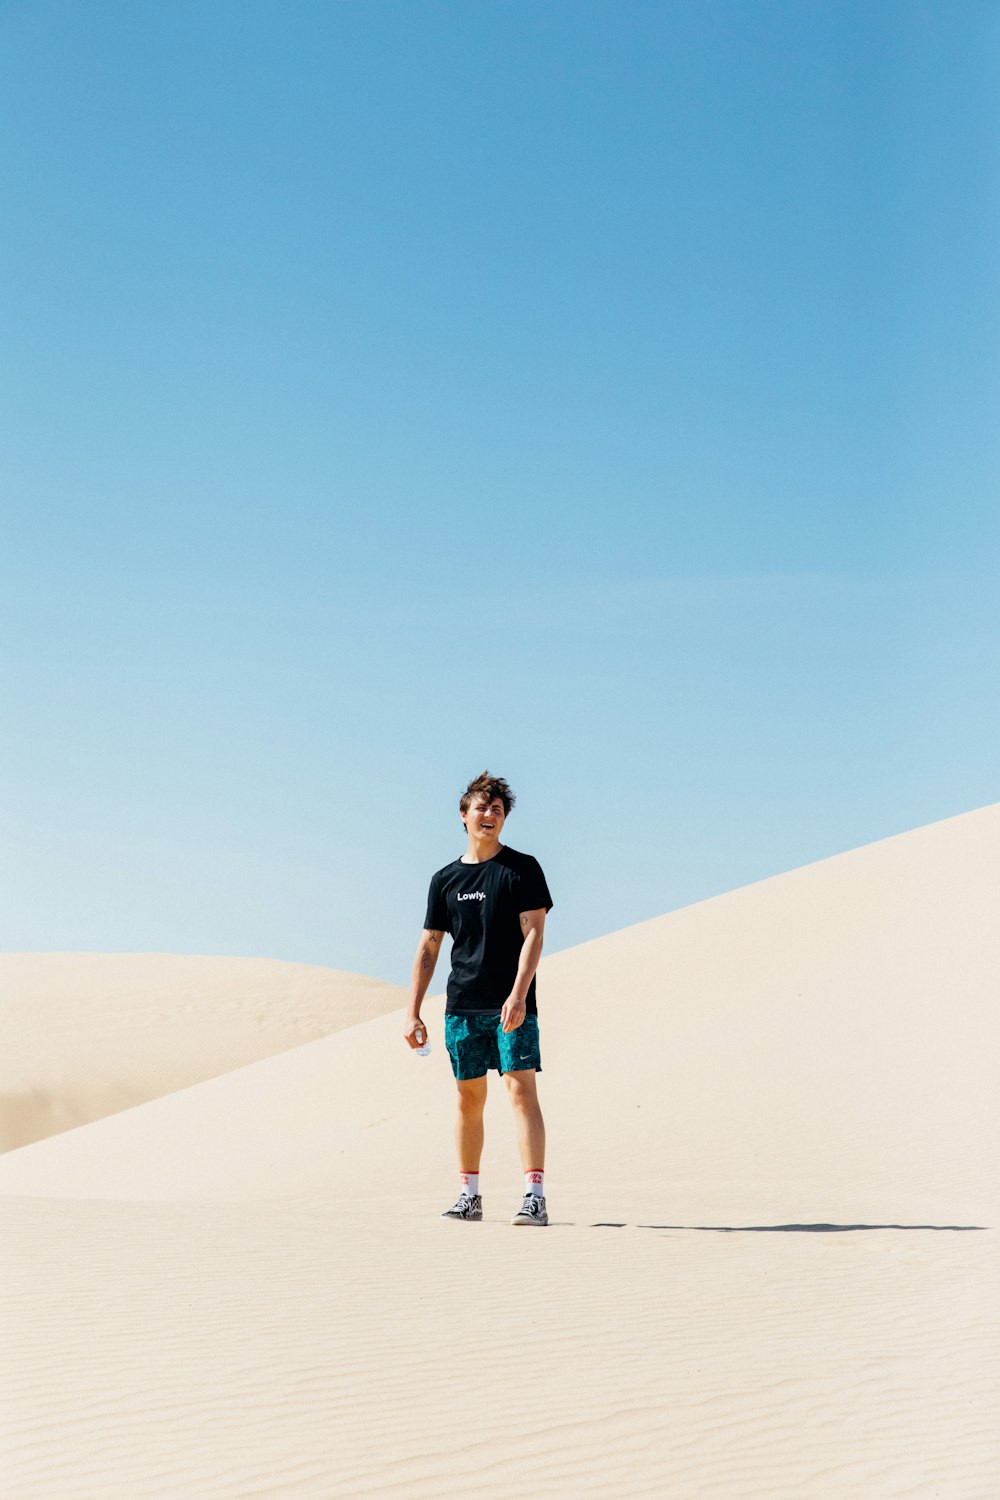 푸른 하늘 아래 사막 한가운데에 서 있는 사람